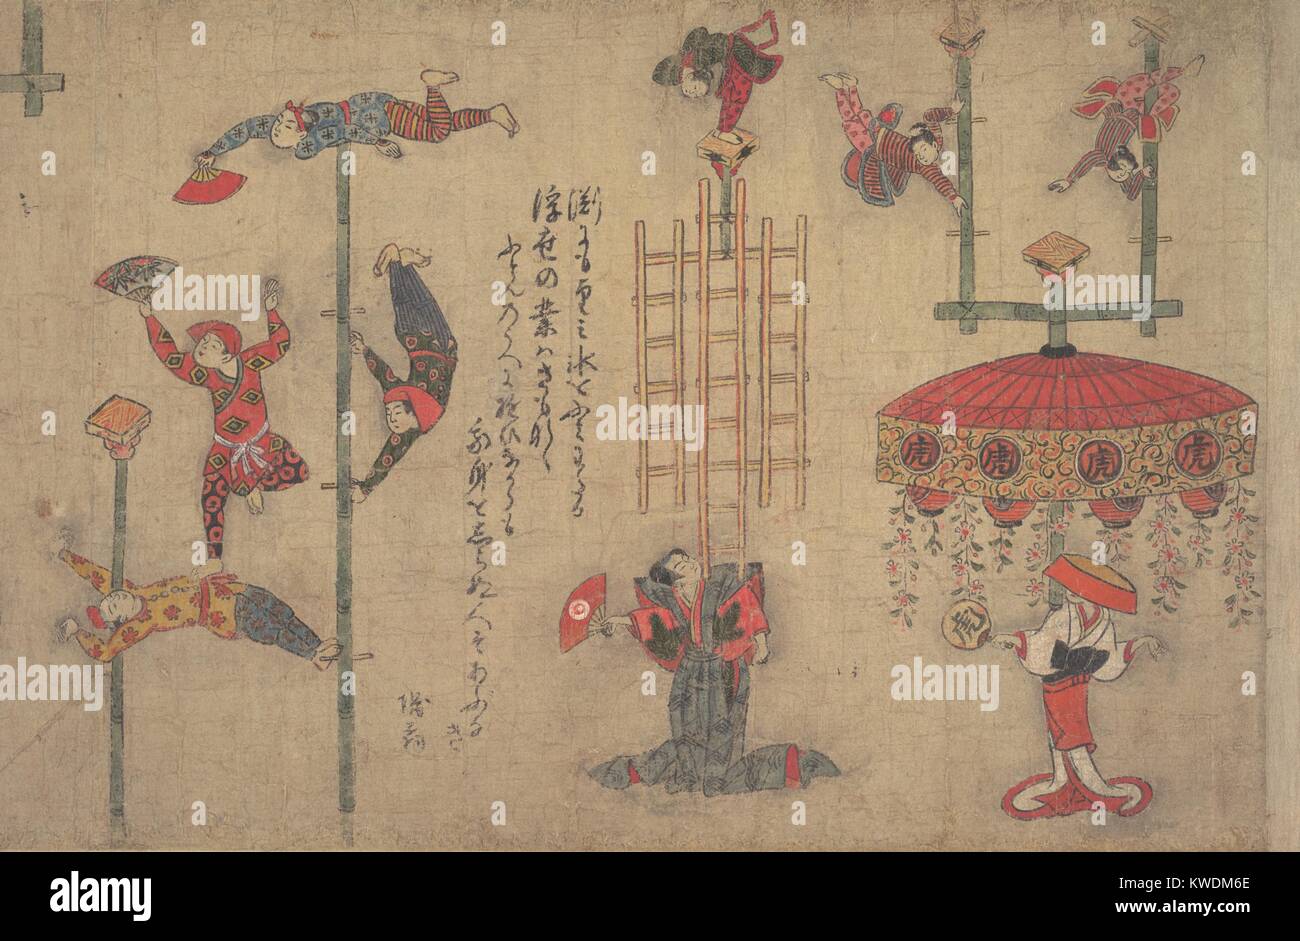 Acrobates, les années 1880, la peinture japonaise, encre et couleur sur papier. Acrobates effectuer à l'aide des perches en bambou et d'autres accessoires pour l'équilibrage des lois. Dans les villes de la période Edo (1615-1868), les élites japonaises parrainera des troupes de tel pour divertissements publics. Poèmes sur l'humour de défilement comparer les prouesses acrobatiques avec la vie quotidienne (BSLOC   2017 16 11) Banque D'Images